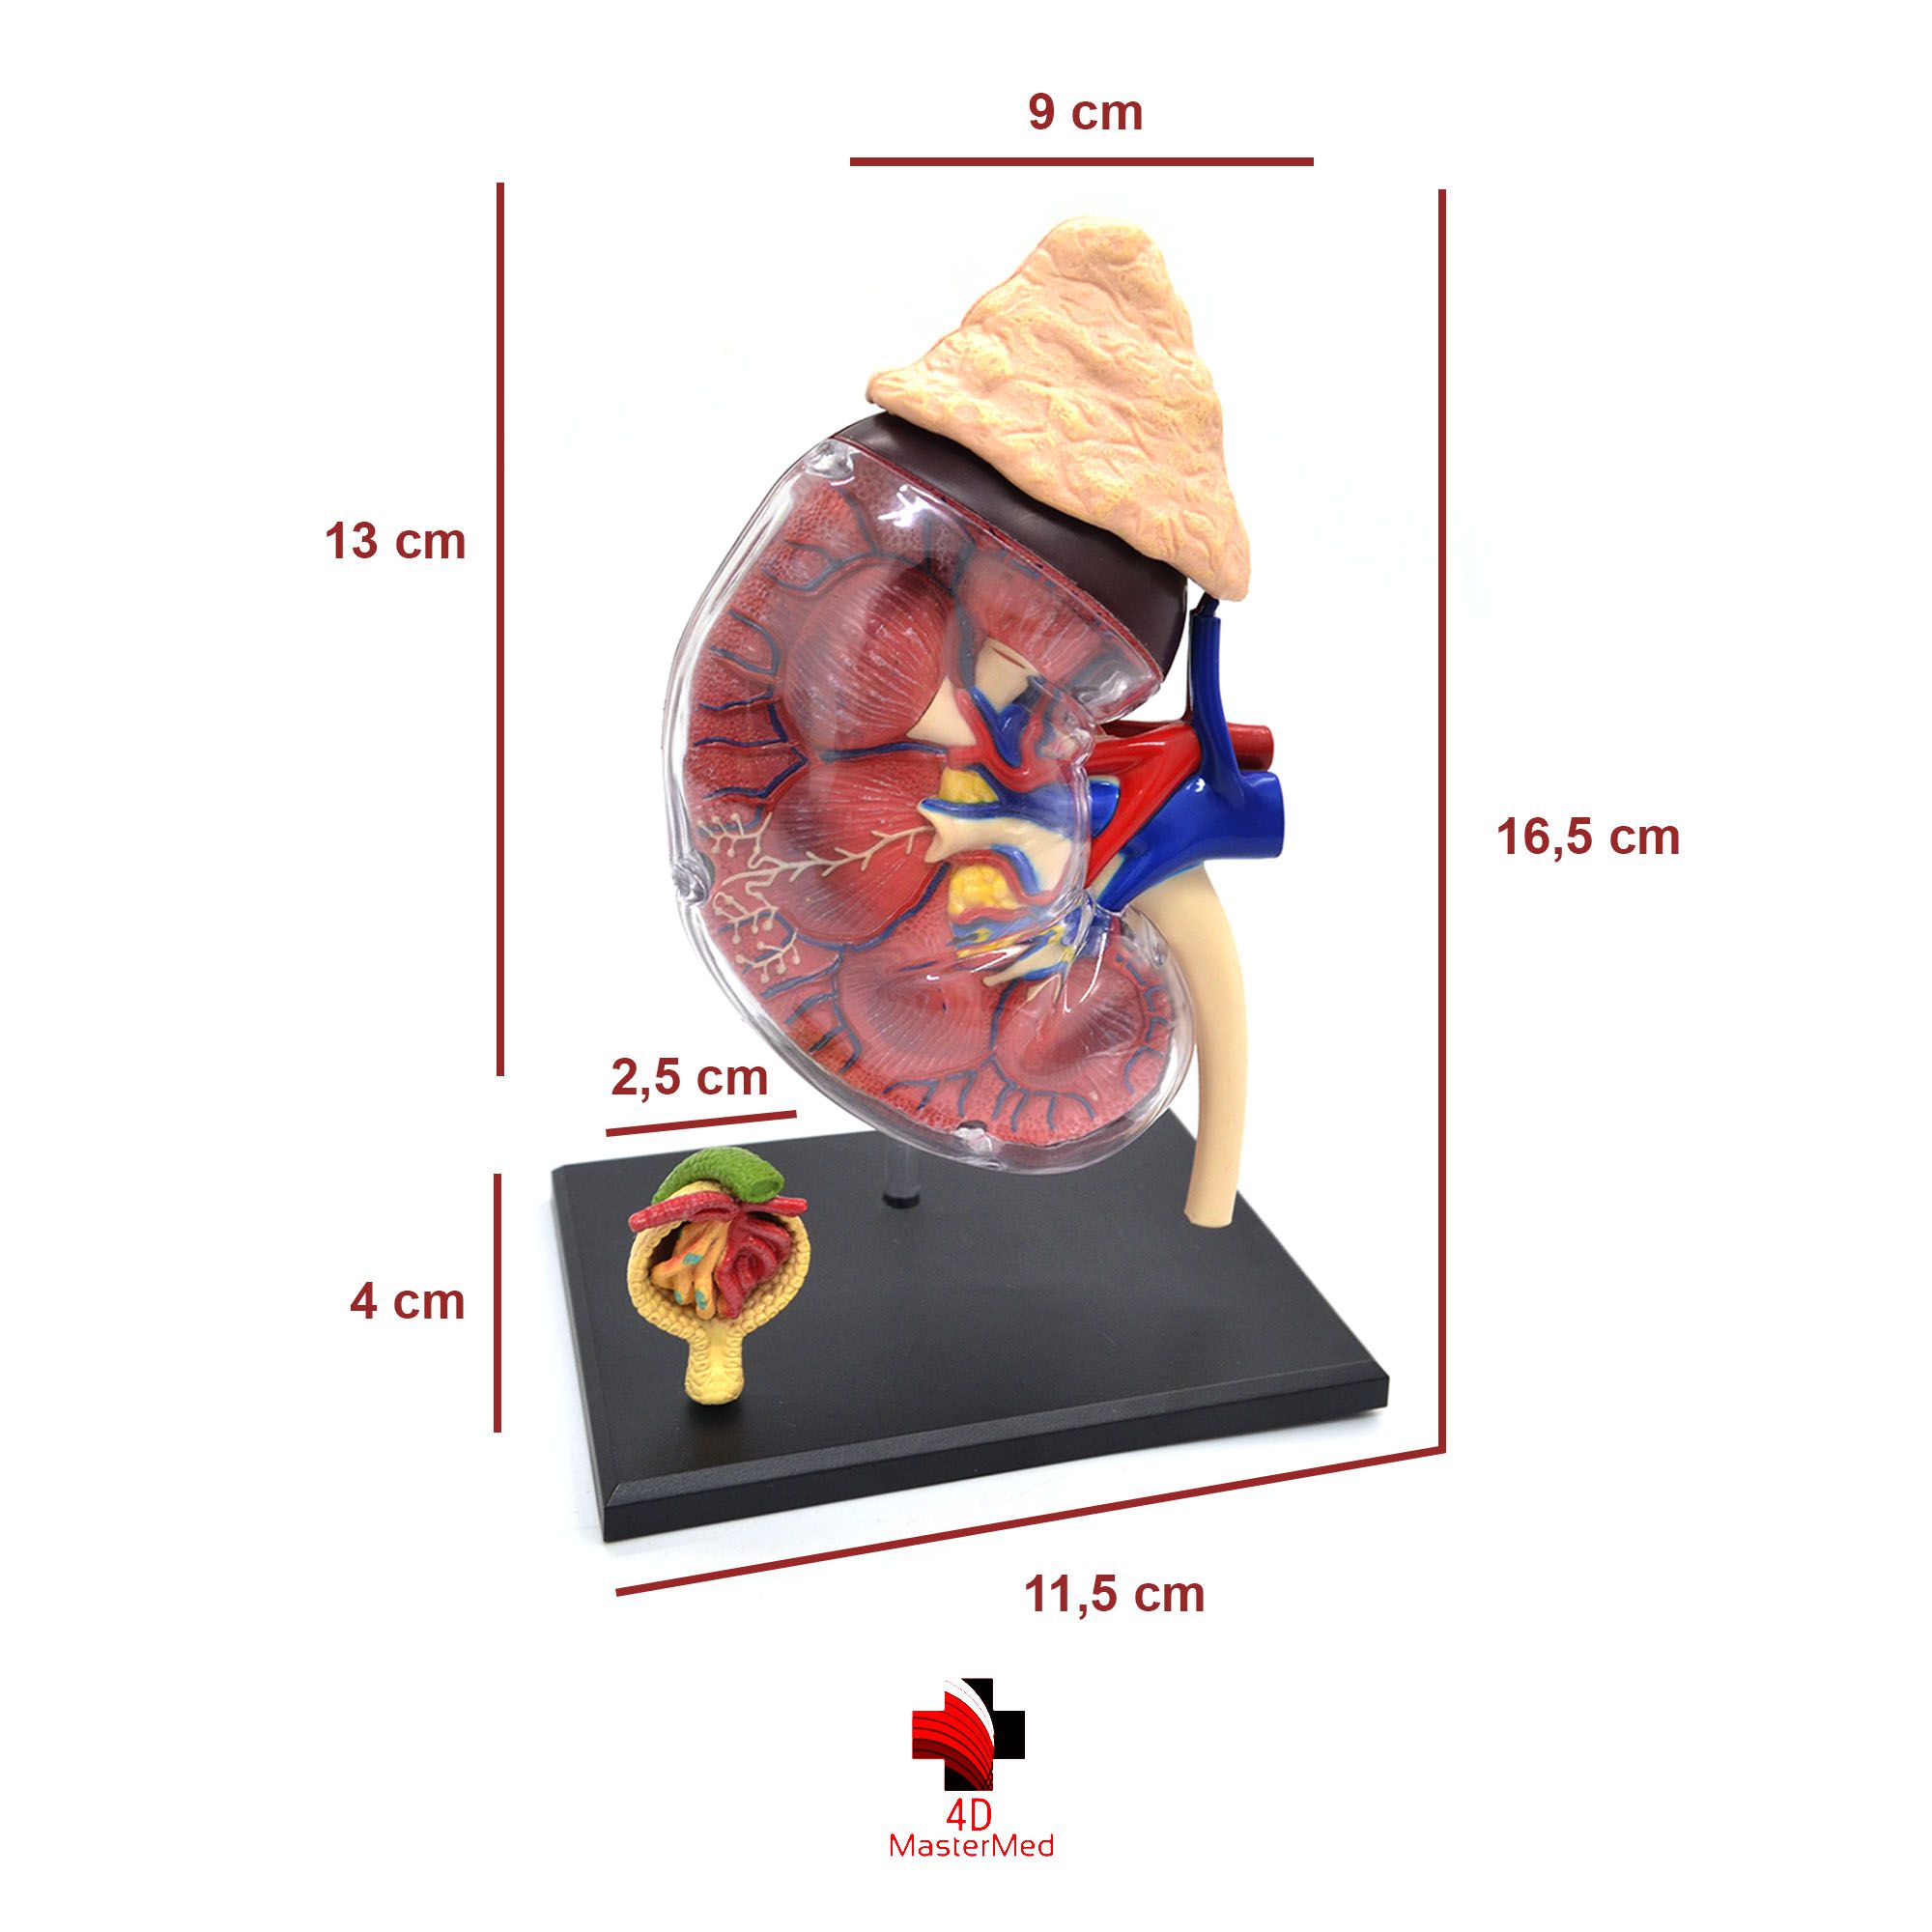 Kit Anatomia Humana - Rim, Órgão Reprodutor Feminino e Sistema Respiratório - 4D MasterMed